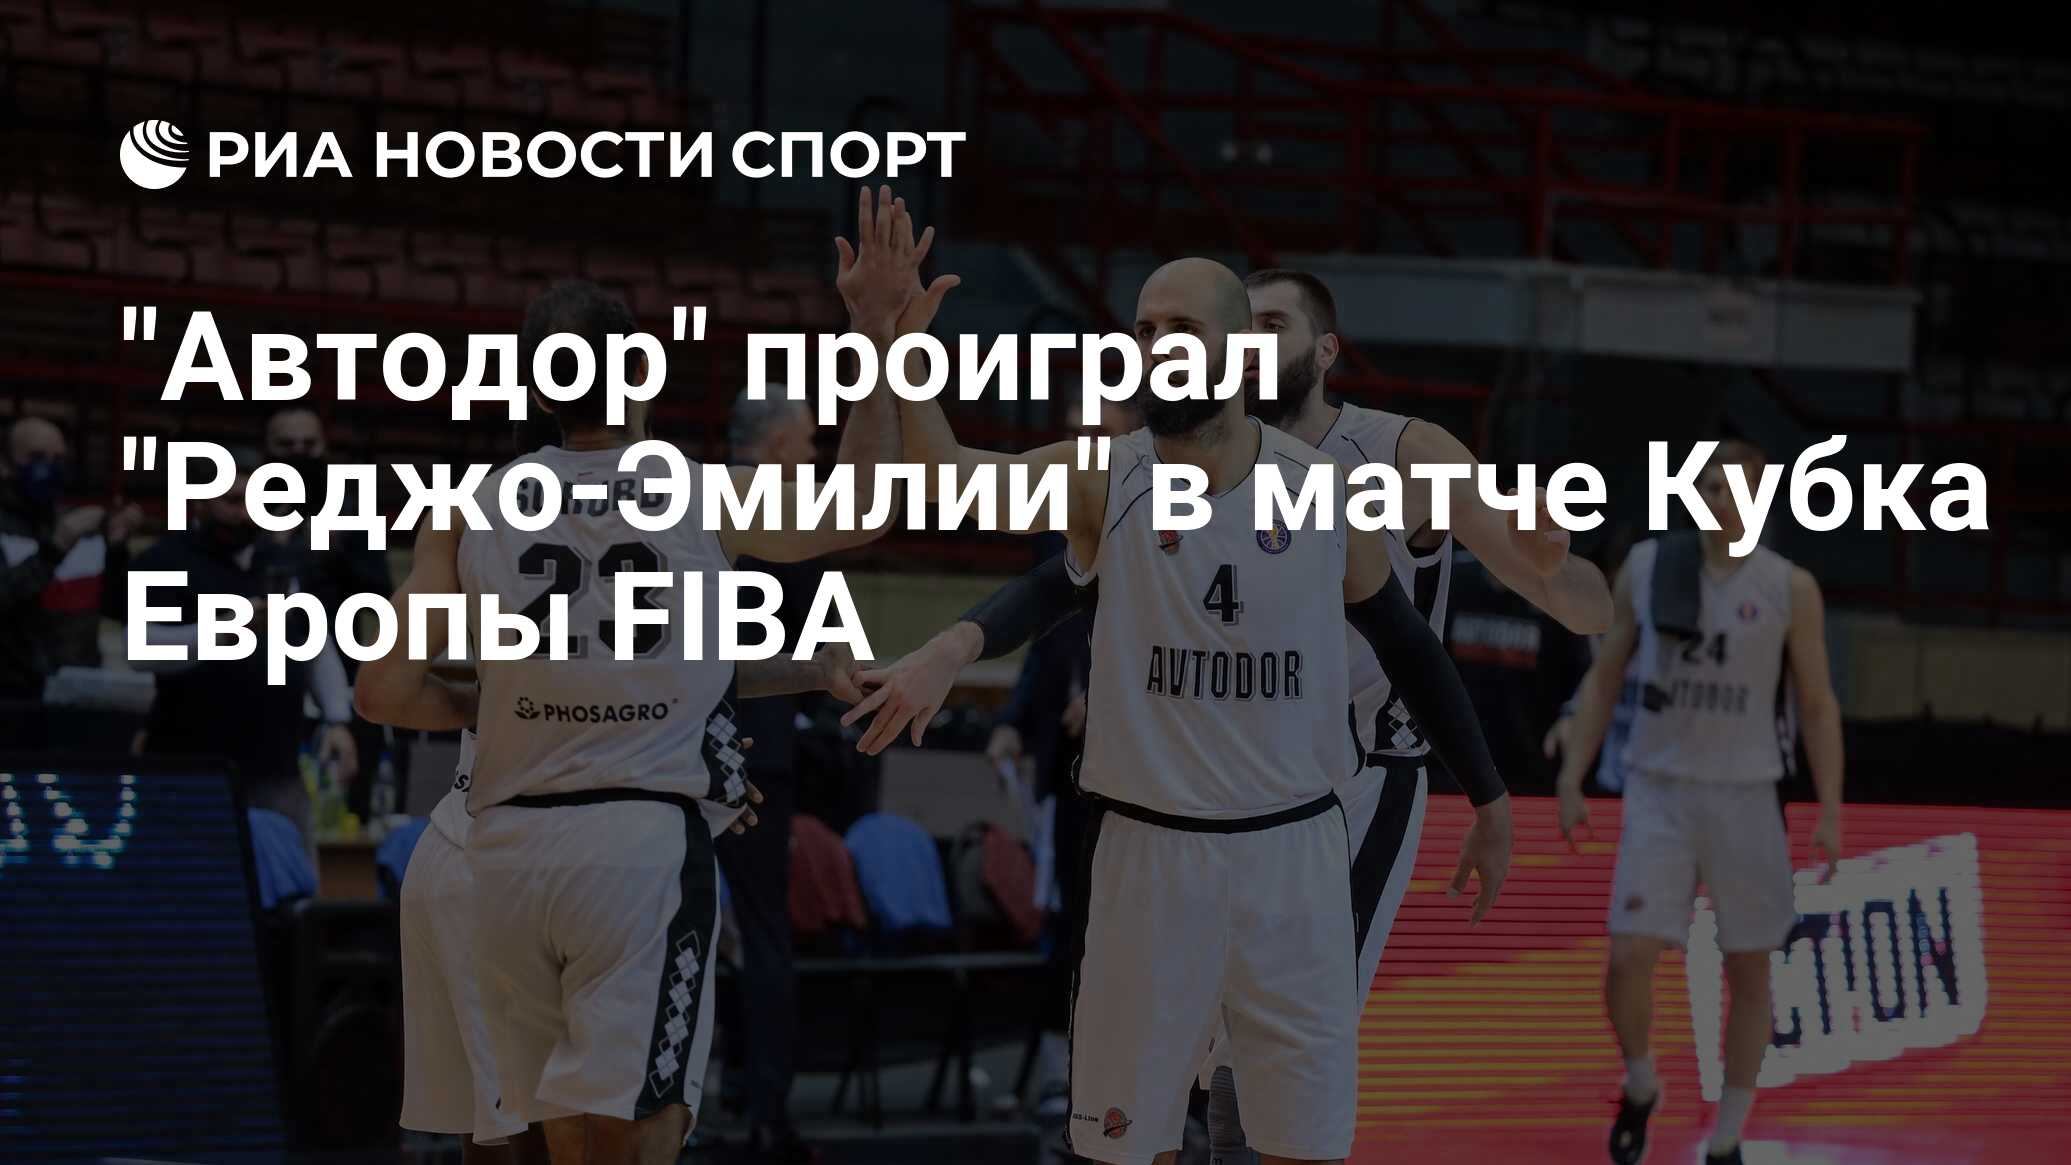 "Автодор" проиграл "Реджо-Эмилии" в матче Кубка Европы FIBA